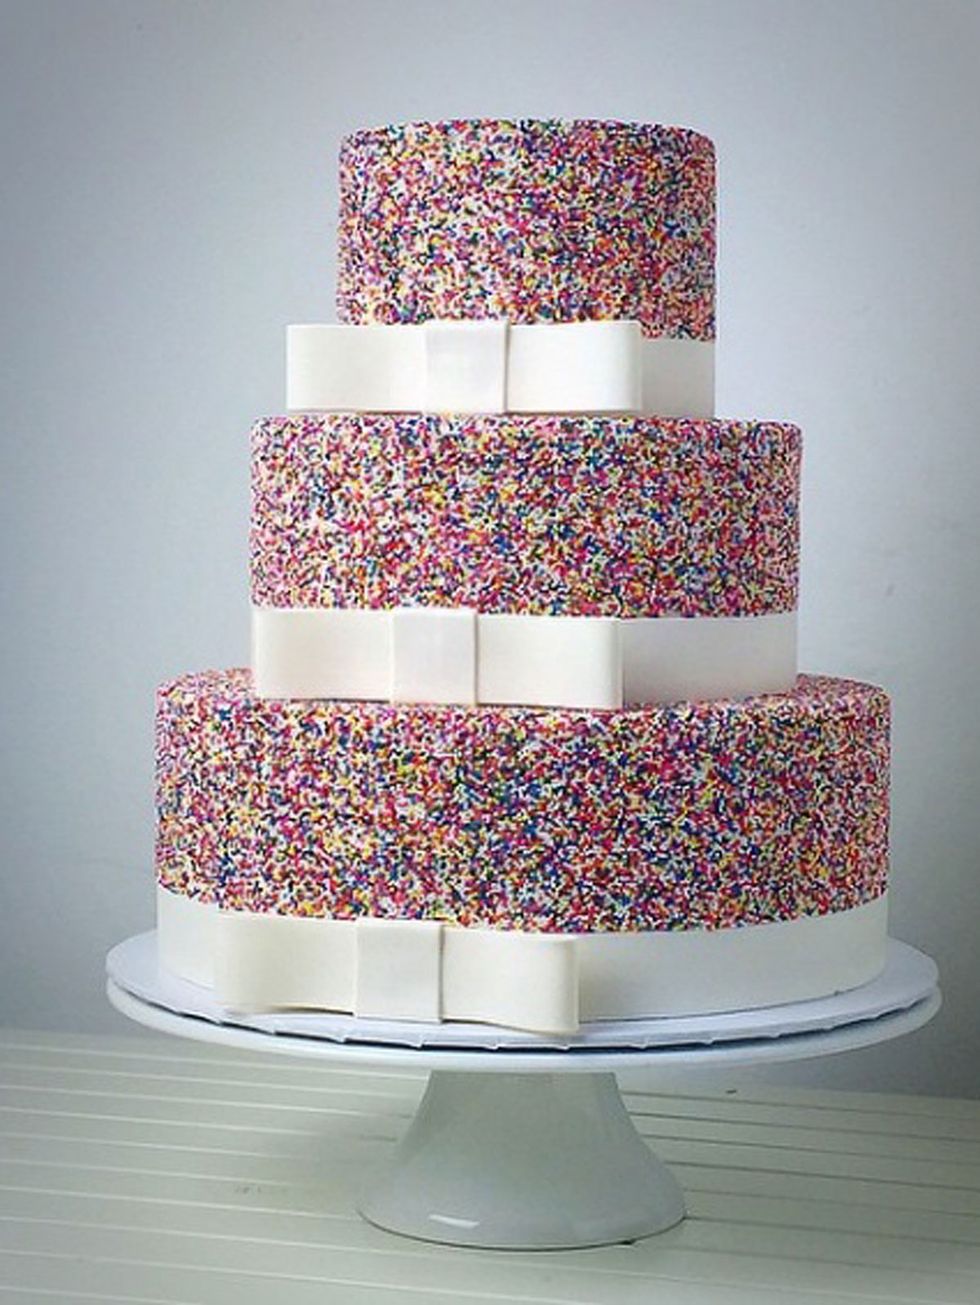 Sugar cake, Cake, Wedding cake, Food, Cake decorating, Dessert, Baked goods, Buttercream, Icing, Sugar paste, 